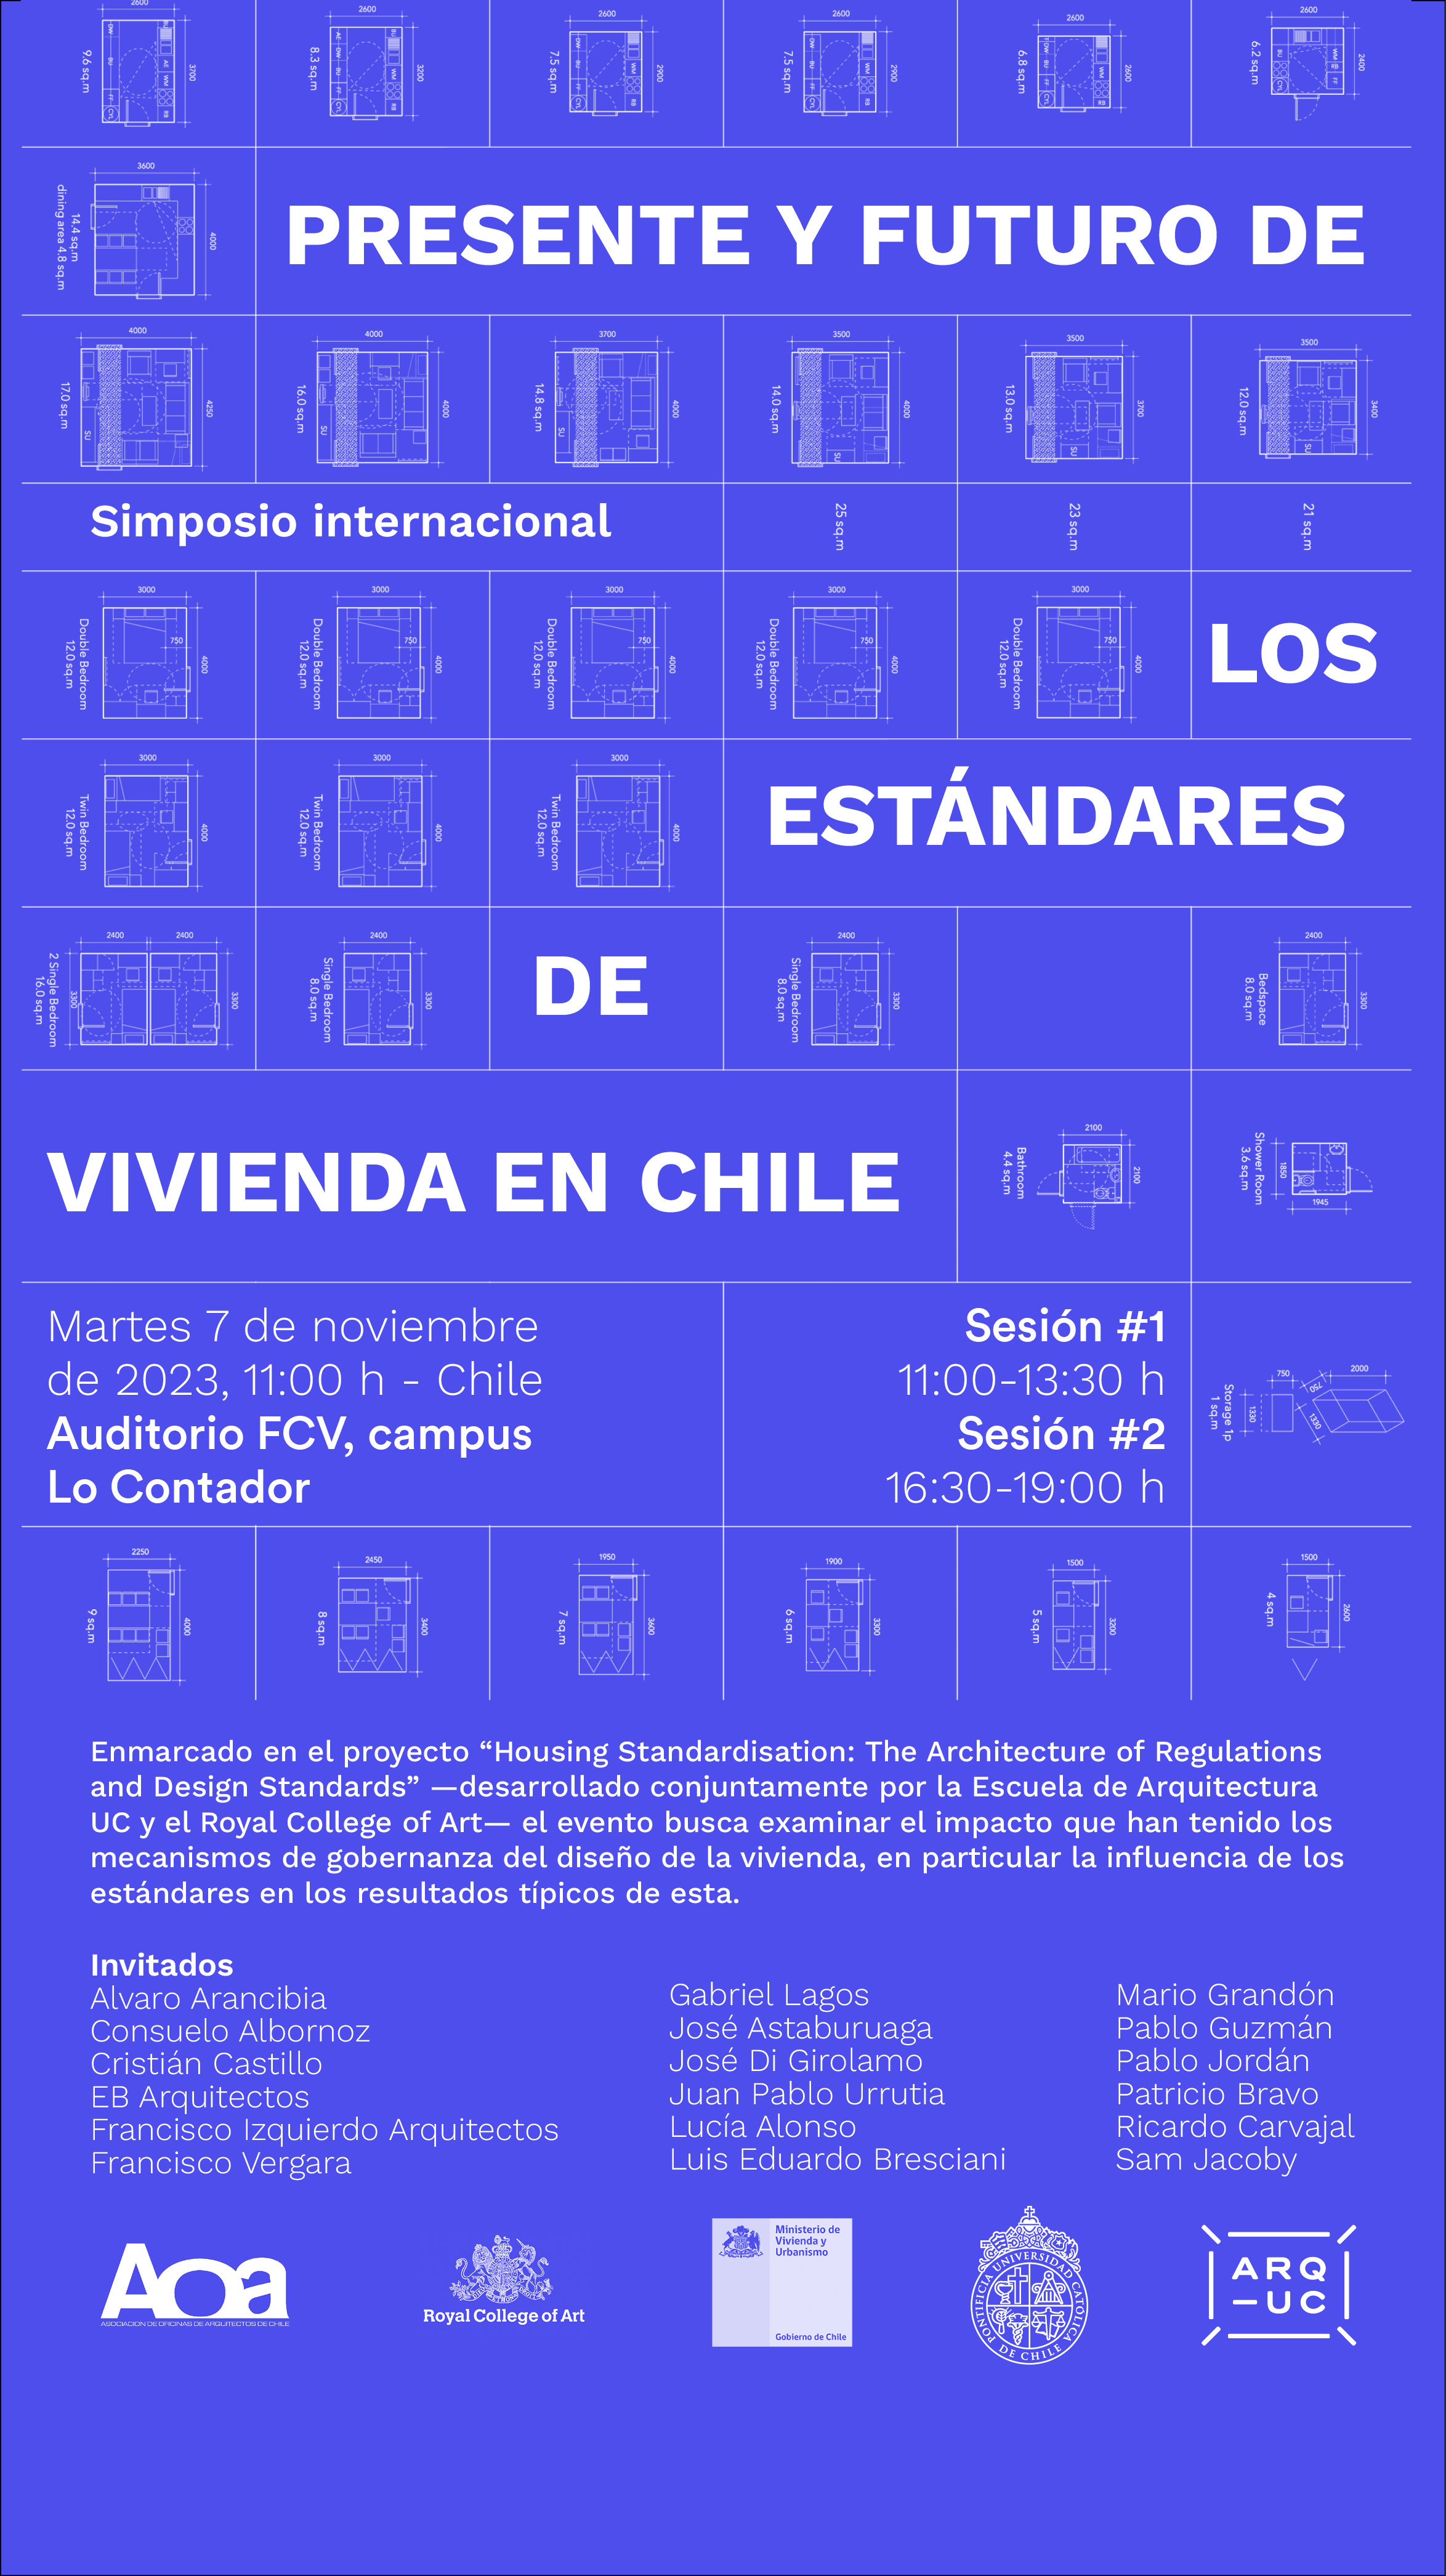 2023-10-30_Afiche_Presente_y_futuro_de_los_estandares_de_vivienda_en_Chile.png